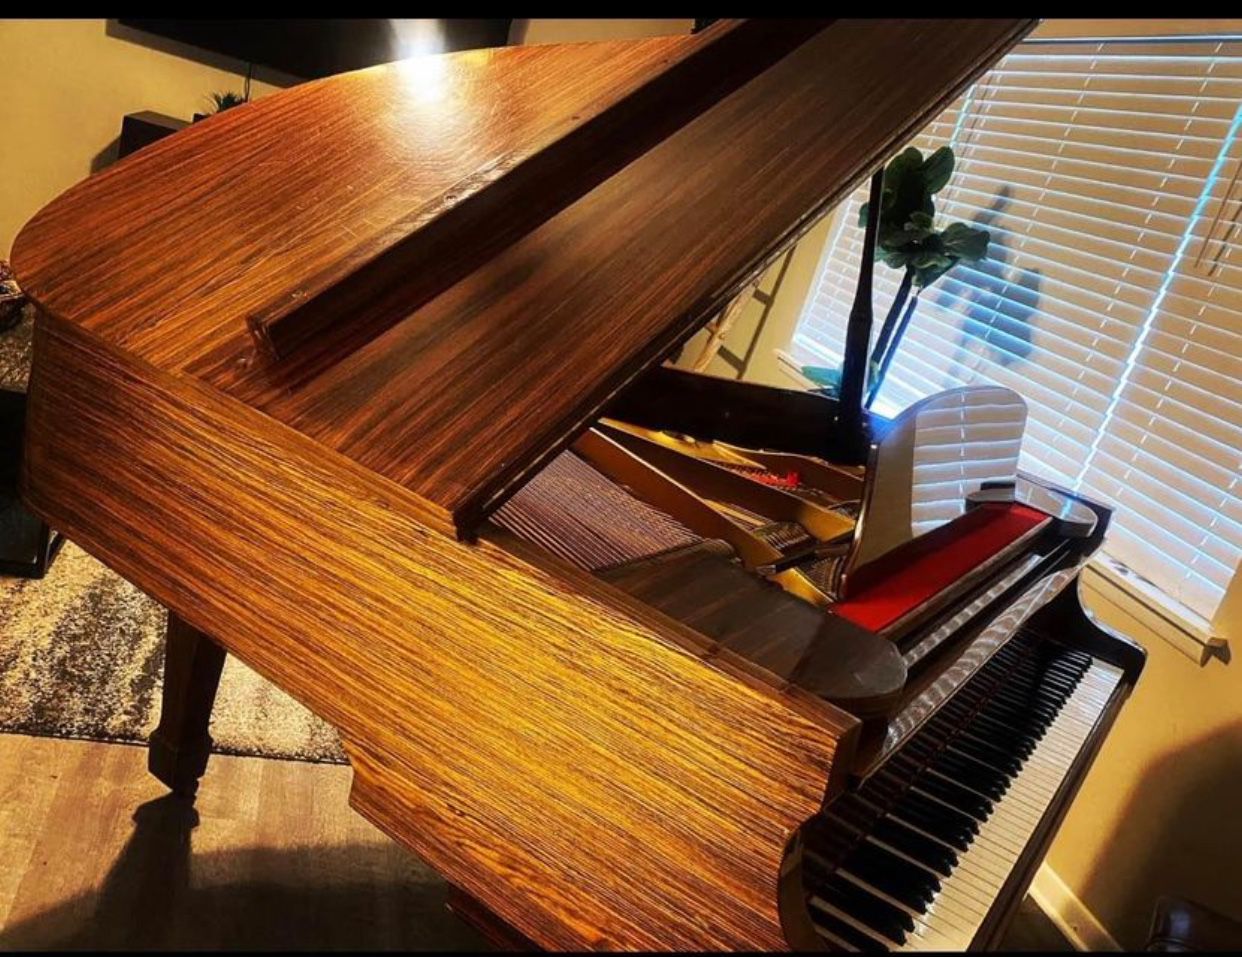 Grand Piano 